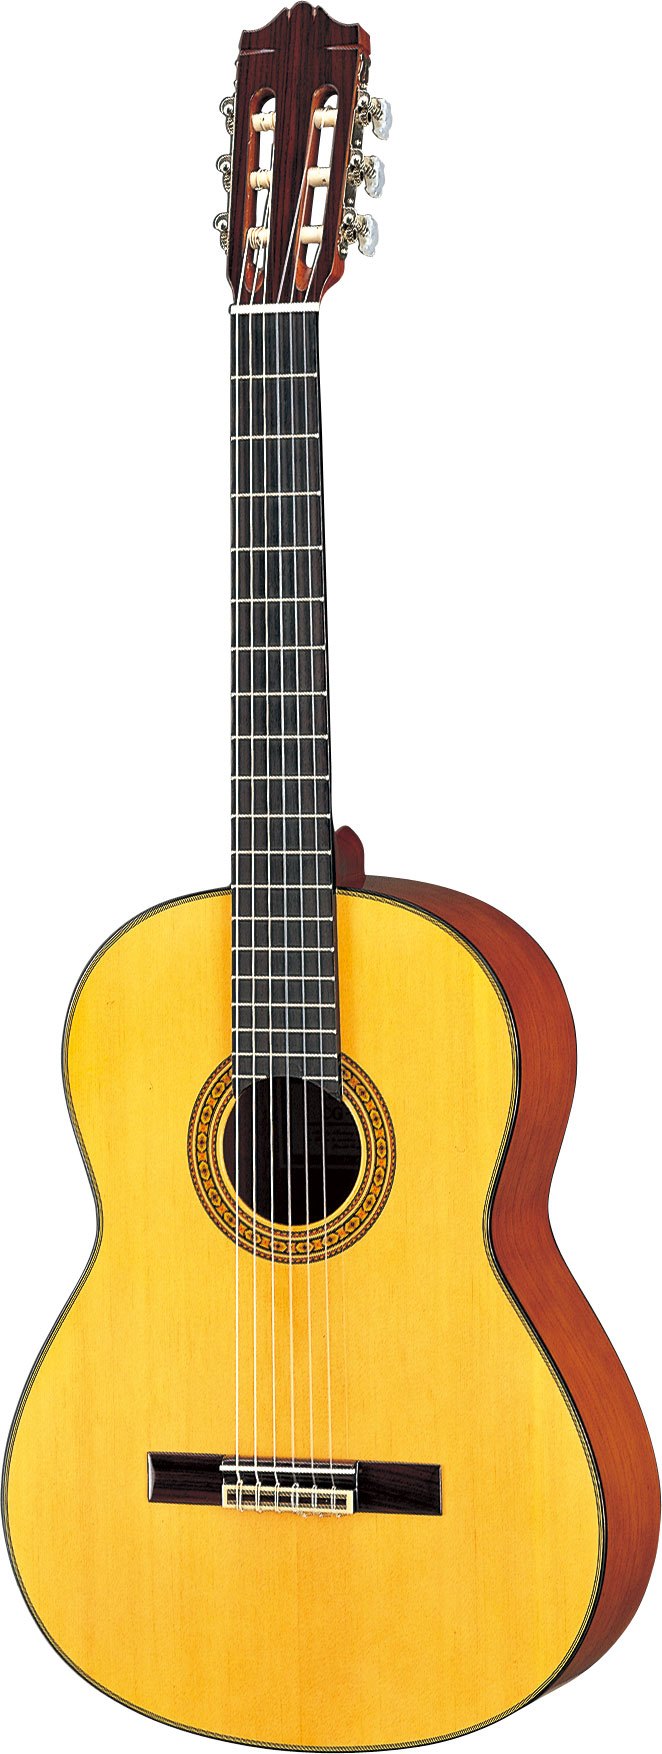 ヤマハ | CG131S - クラシックギター・ナイロン弦ギター - 概要